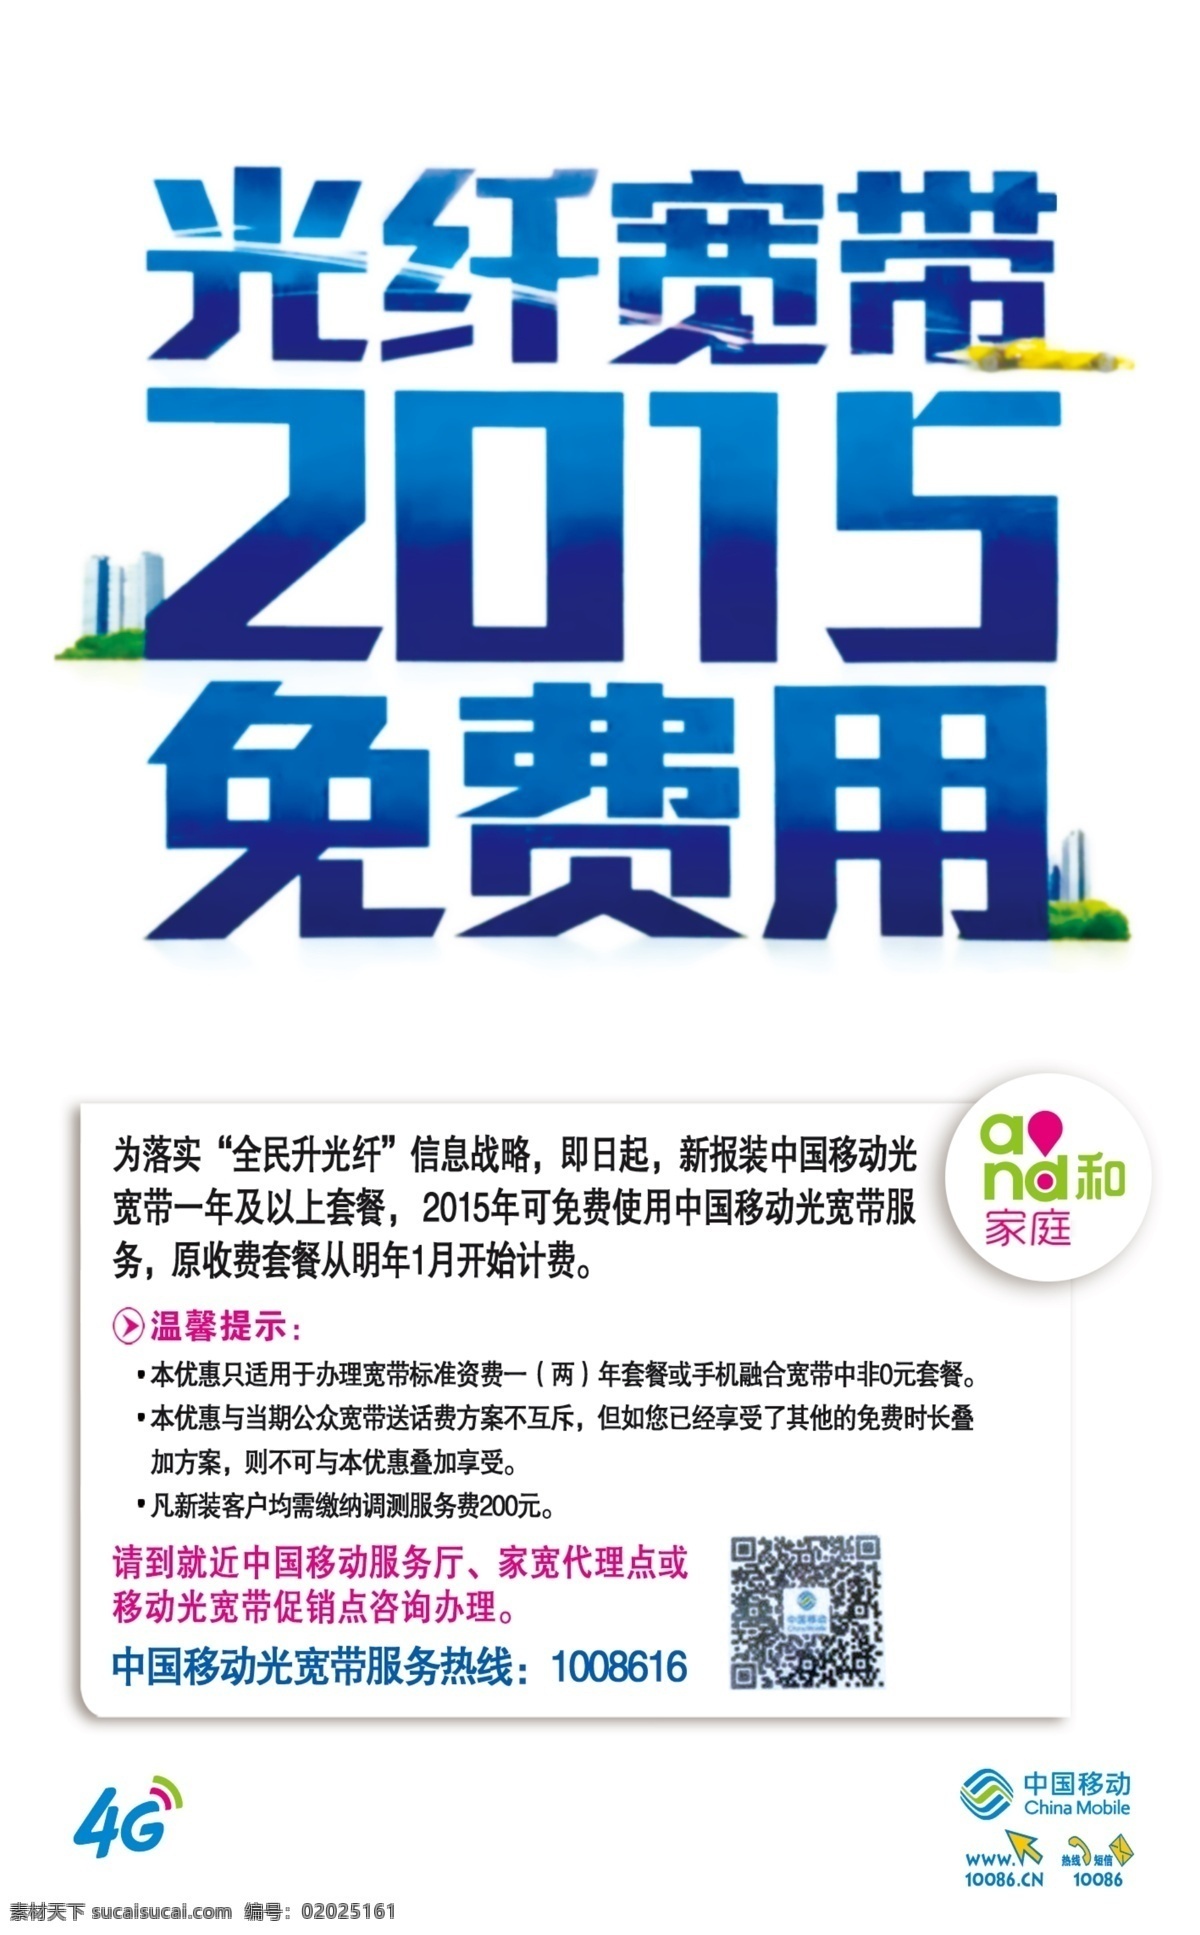 光纤宽带海报 中国移动 免费用 2015 and和 4g 白色